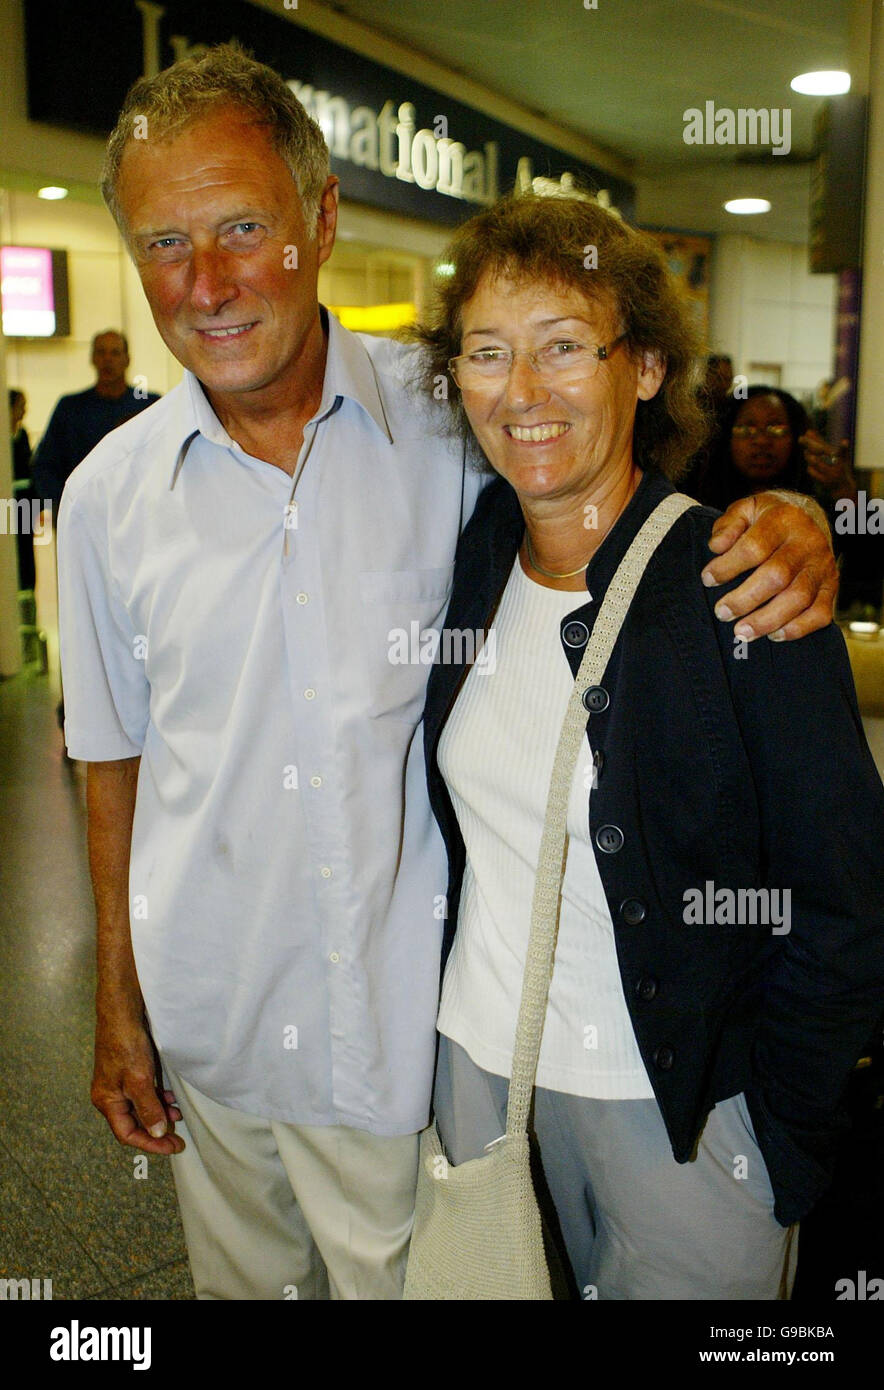 Le rameur Mick Norman, accompagné de sa femme Pat, revient à l'aéroport de Gatwick, à Sussex, après avoir effectué un voyage à travers l'Atlantique. Banque D'Images